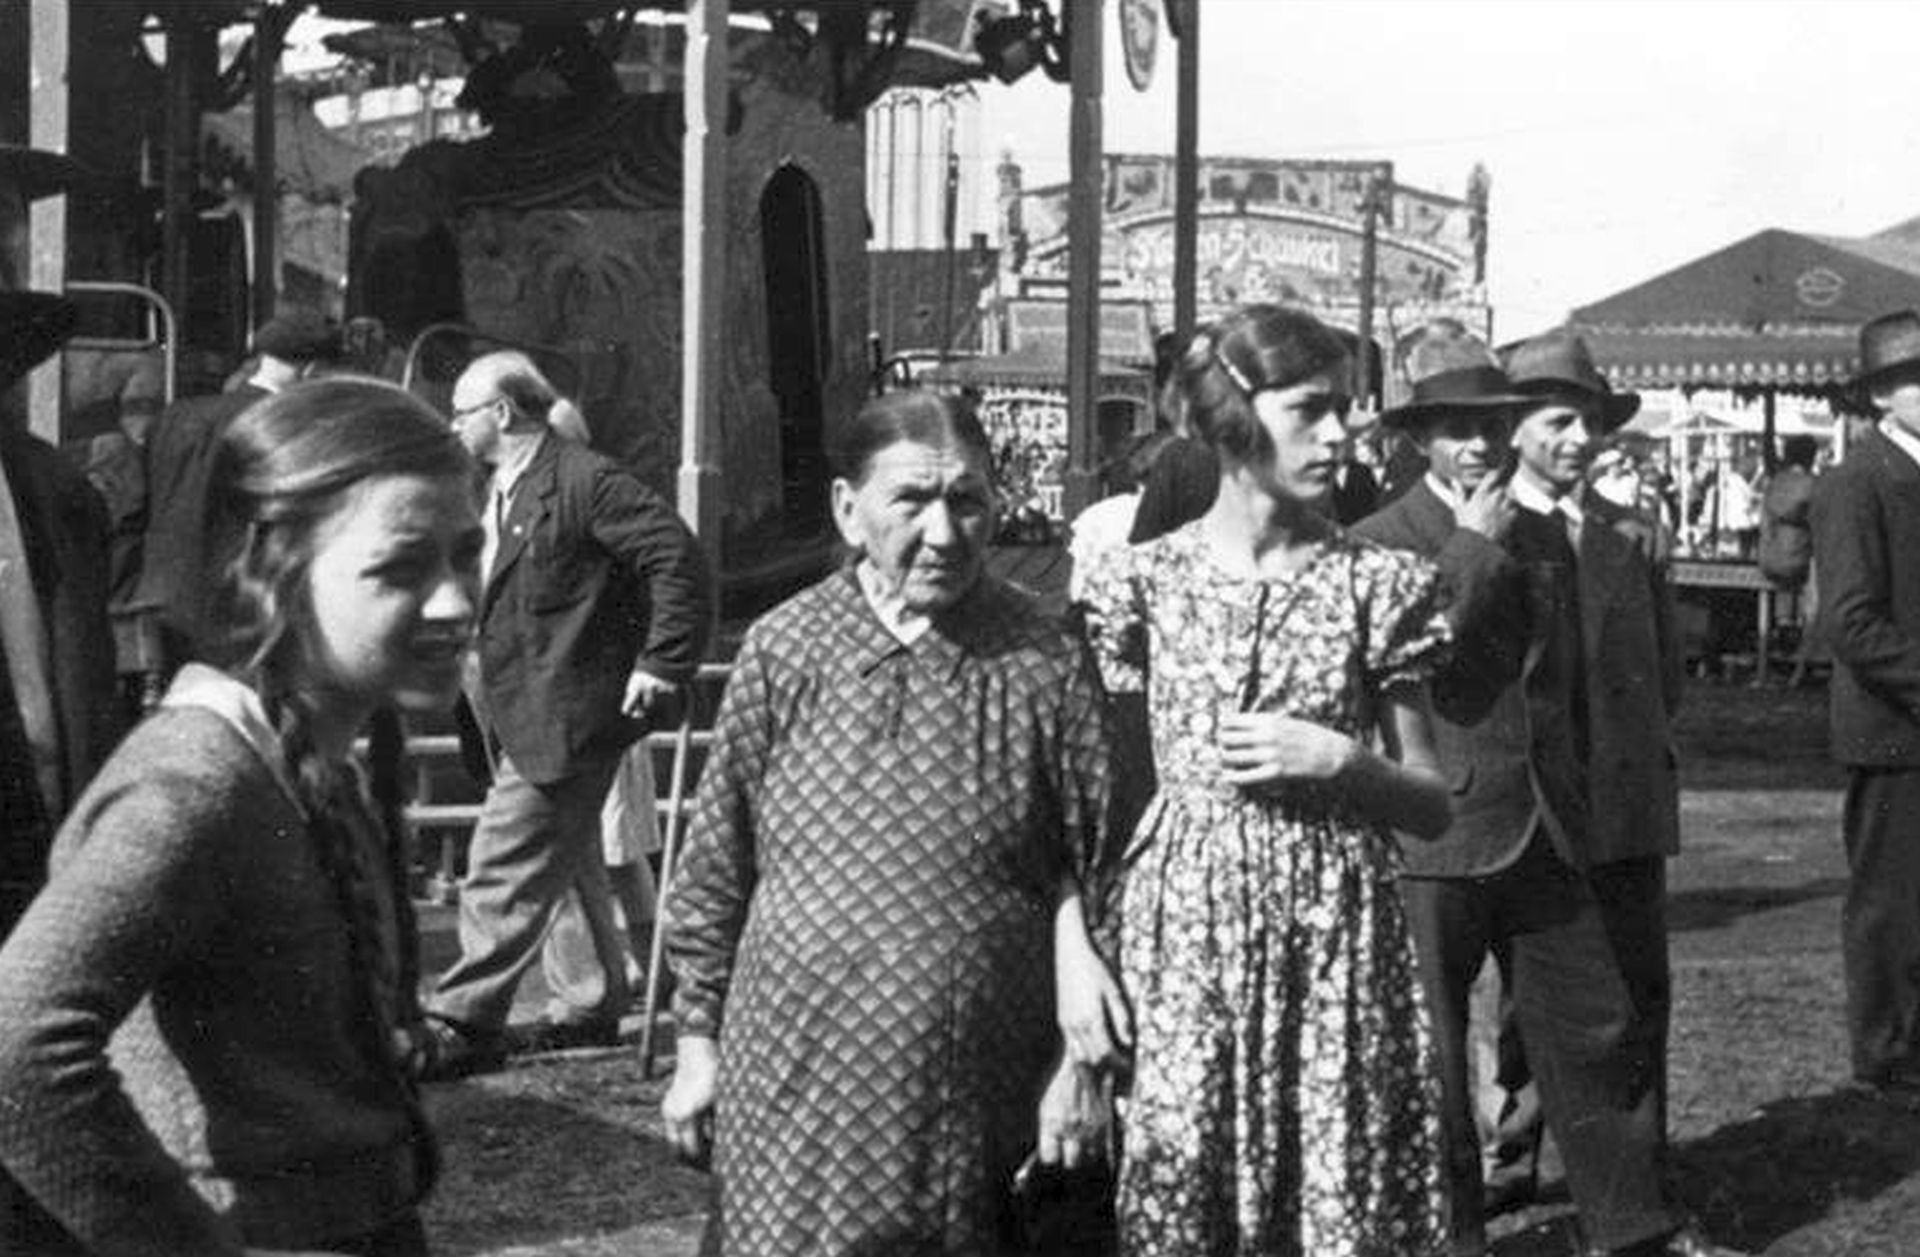 Menschen auf dem Rummel,1930er Jahre.jpg